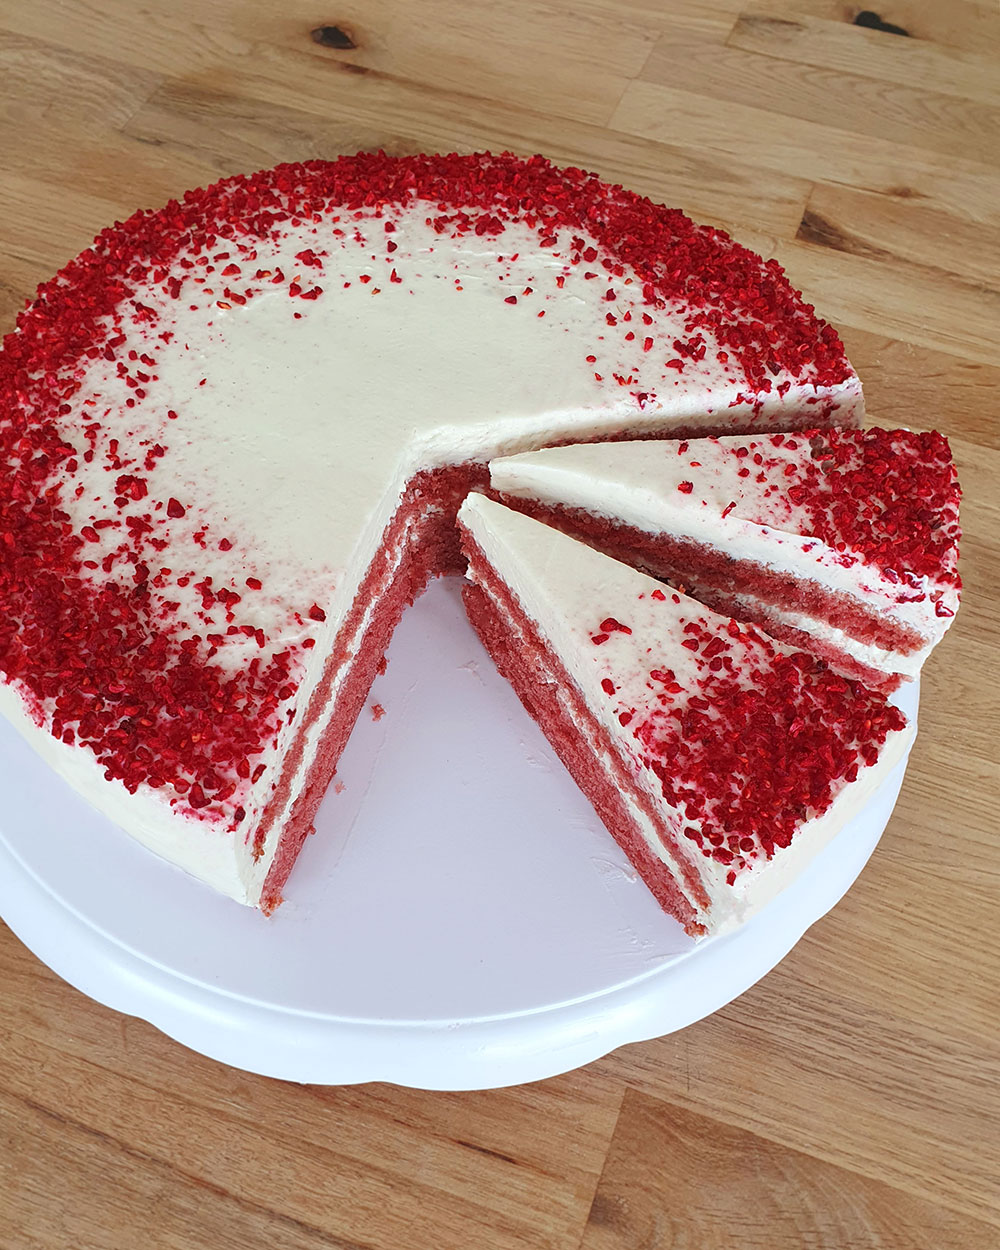 Amerikanisches Tortenrezept für Red Velvet Cake